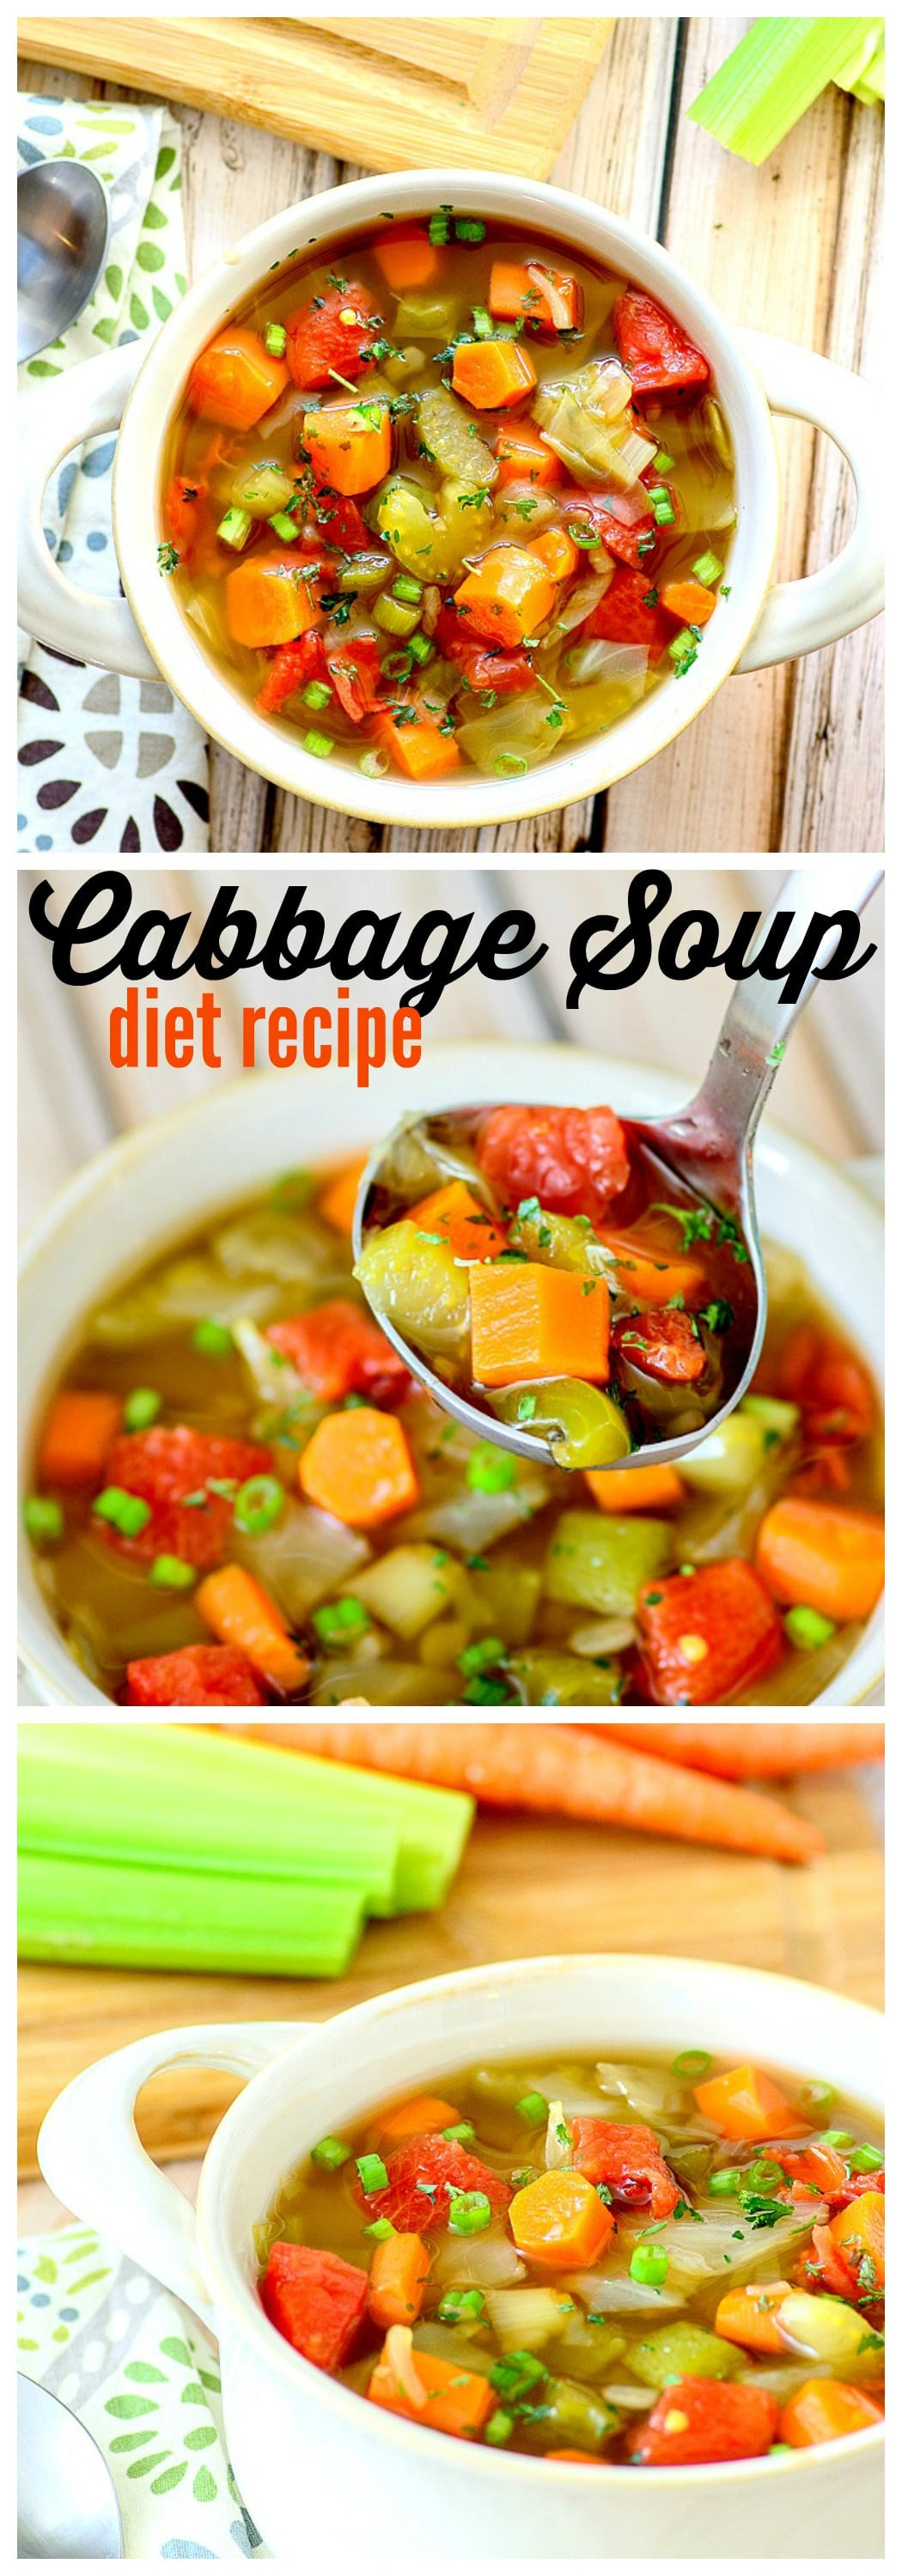 The Cabbage Soup Diet
 The Cabbage Soup Diet Does it really work MomDot